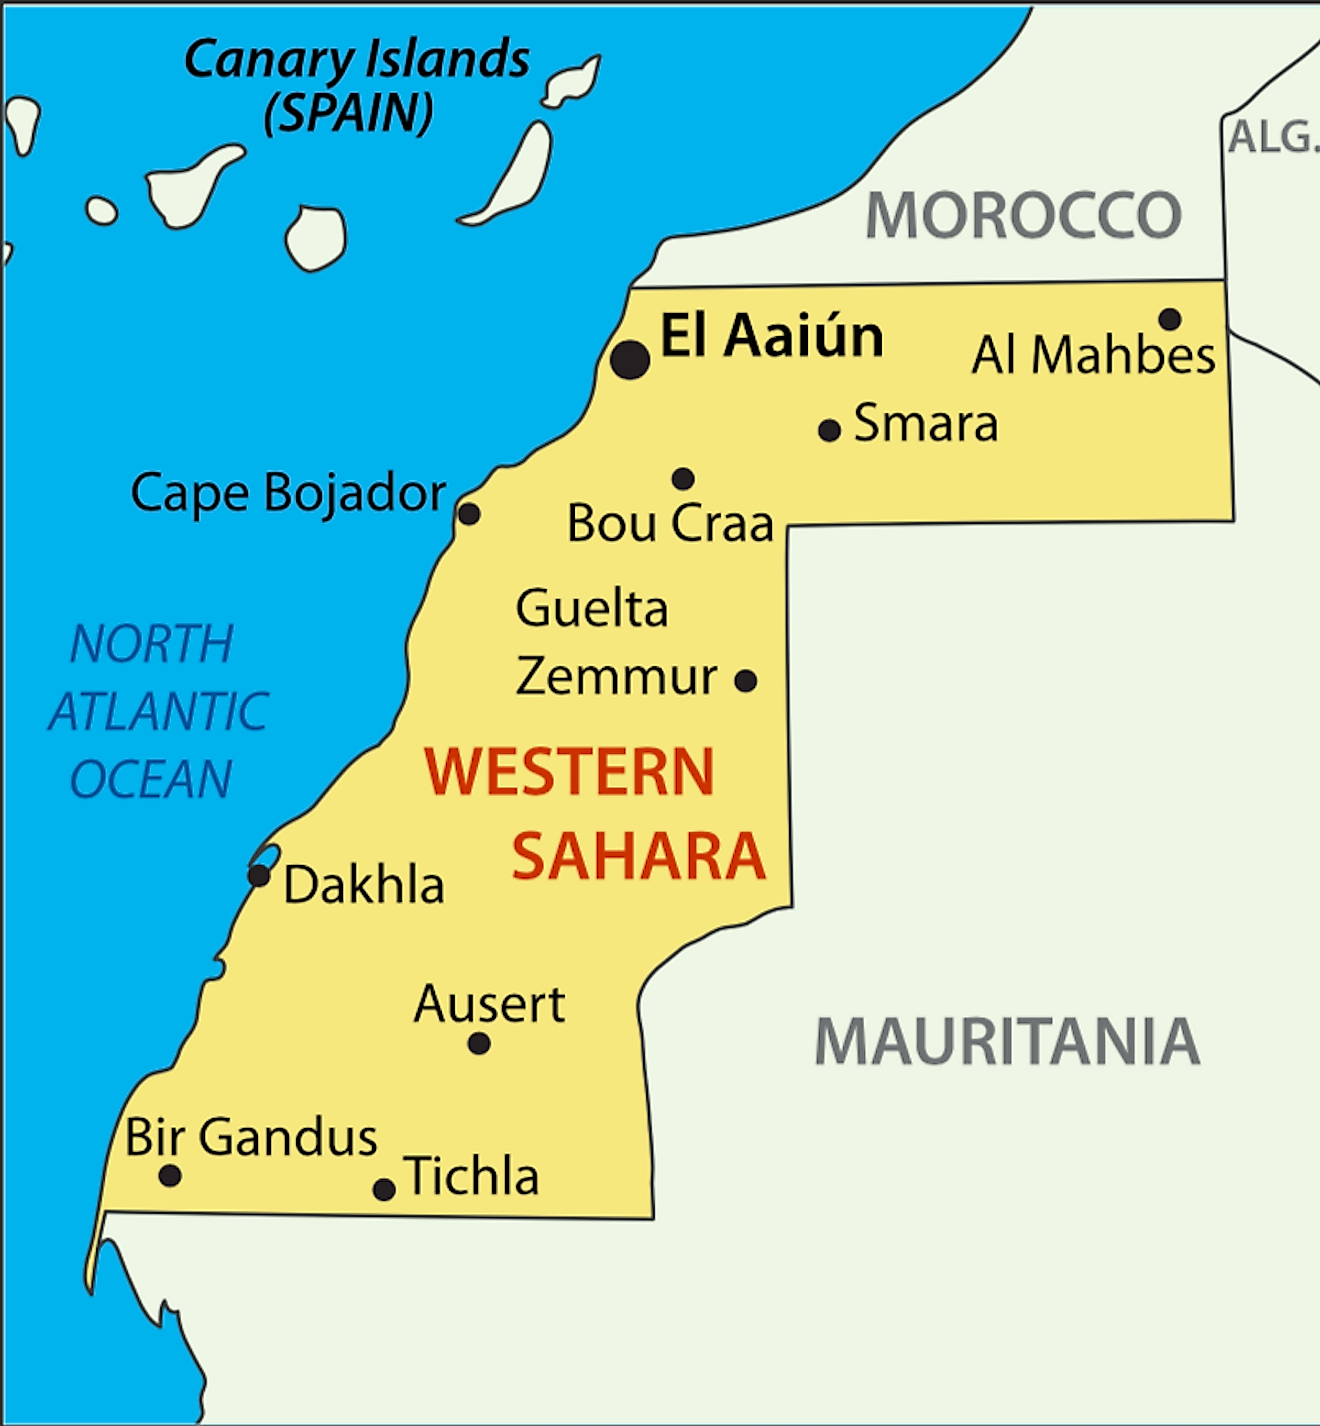 Mapa político del Sáhara Occidental que muestra las principales ciudades, incluida la ciudad más grande de El Aaiún o El Aaiún. Es un territorio en disputa sin divisiones administrativas oficiales propias.